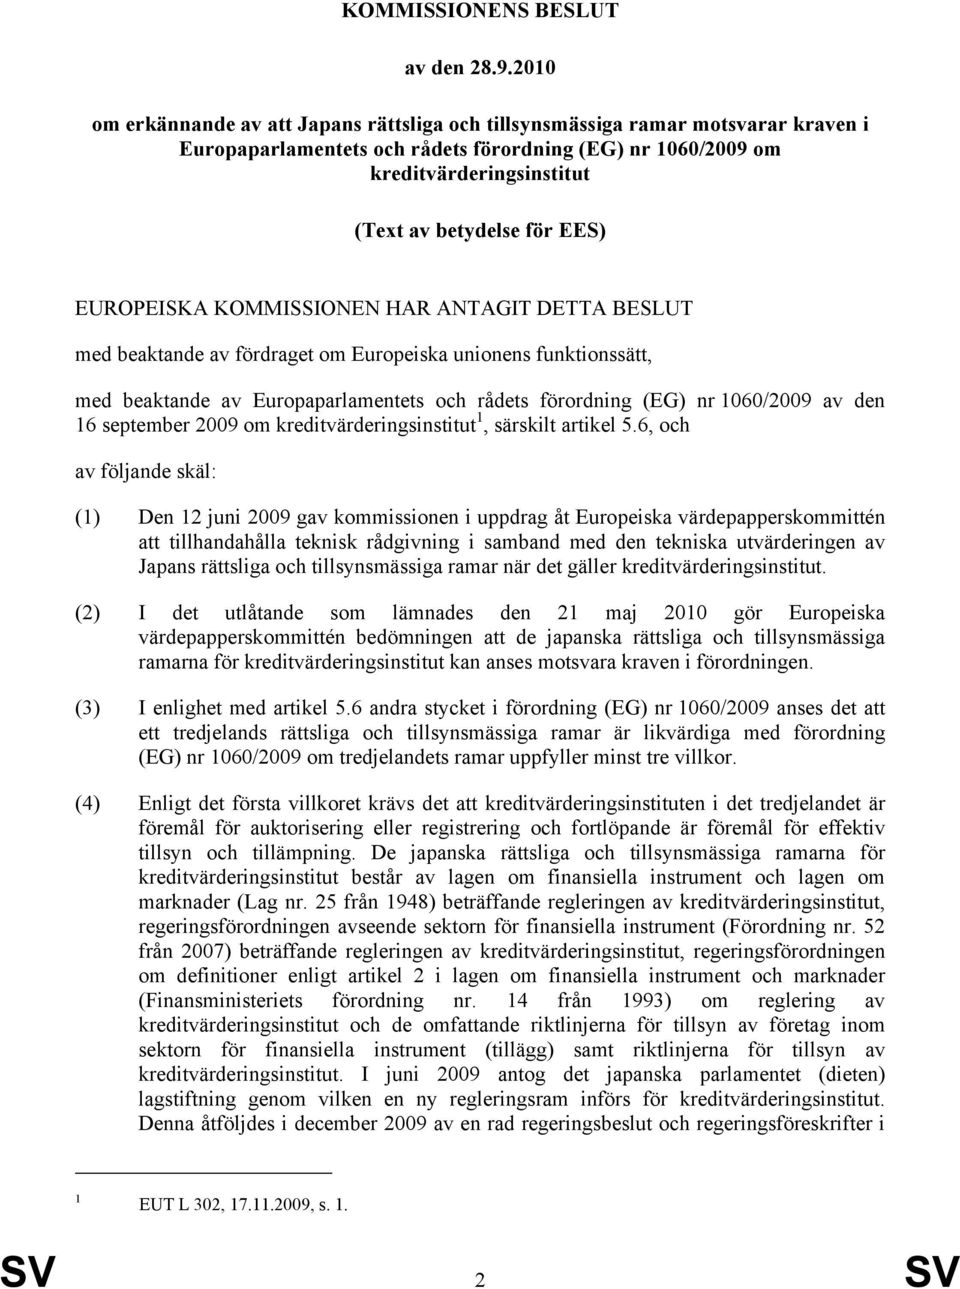 EES) EUROPEISKA KOMMISSIONEN HAR ANTAGIT DETTA BESLUT med beaktande av fördraget om Europeiska unionens funktionssätt, med beaktande av Europaparlamentets och rådets förordning (EG) nr 1060/2009 av